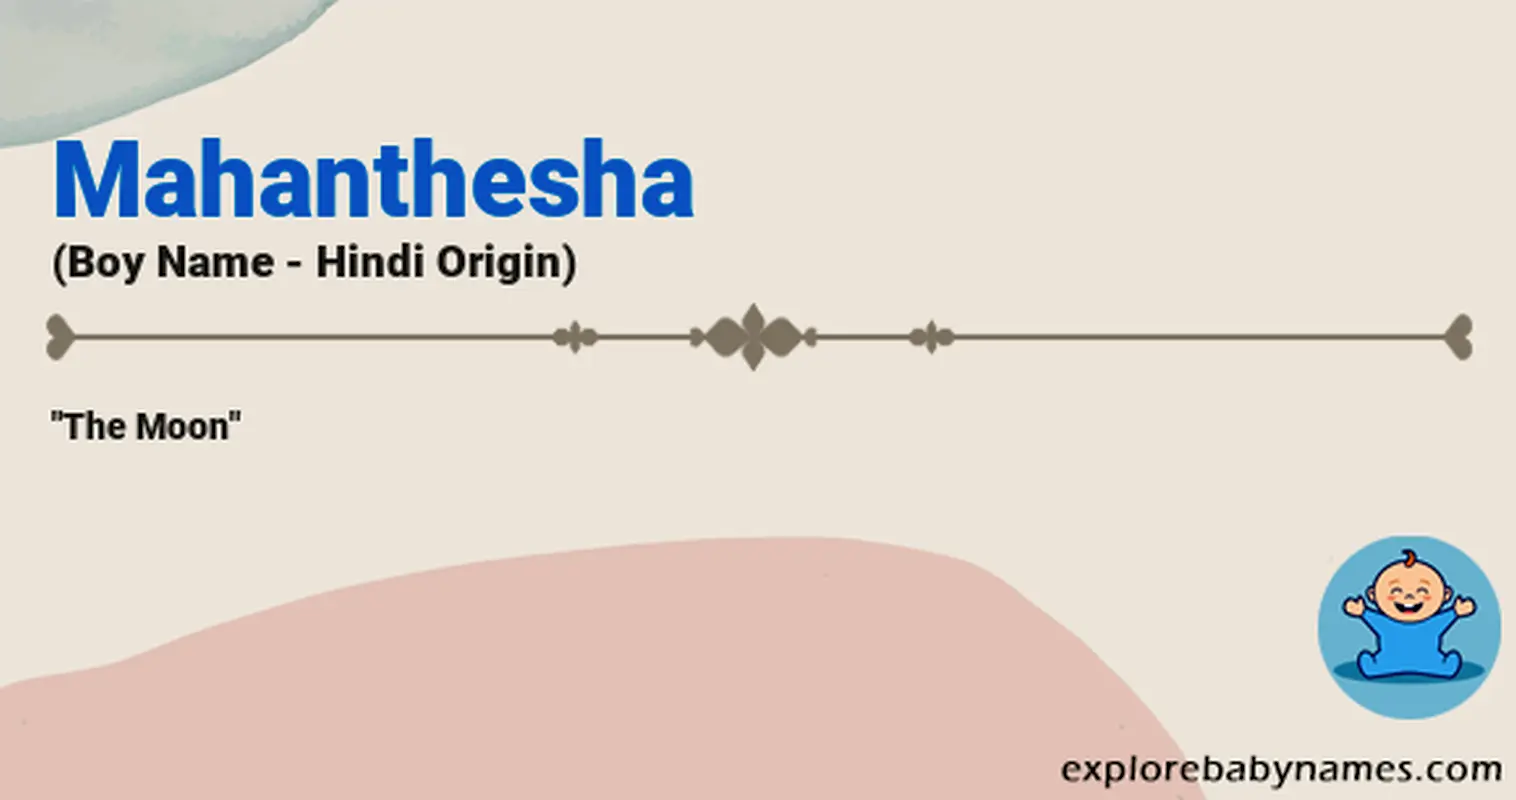 Meaning of Mahanthesha